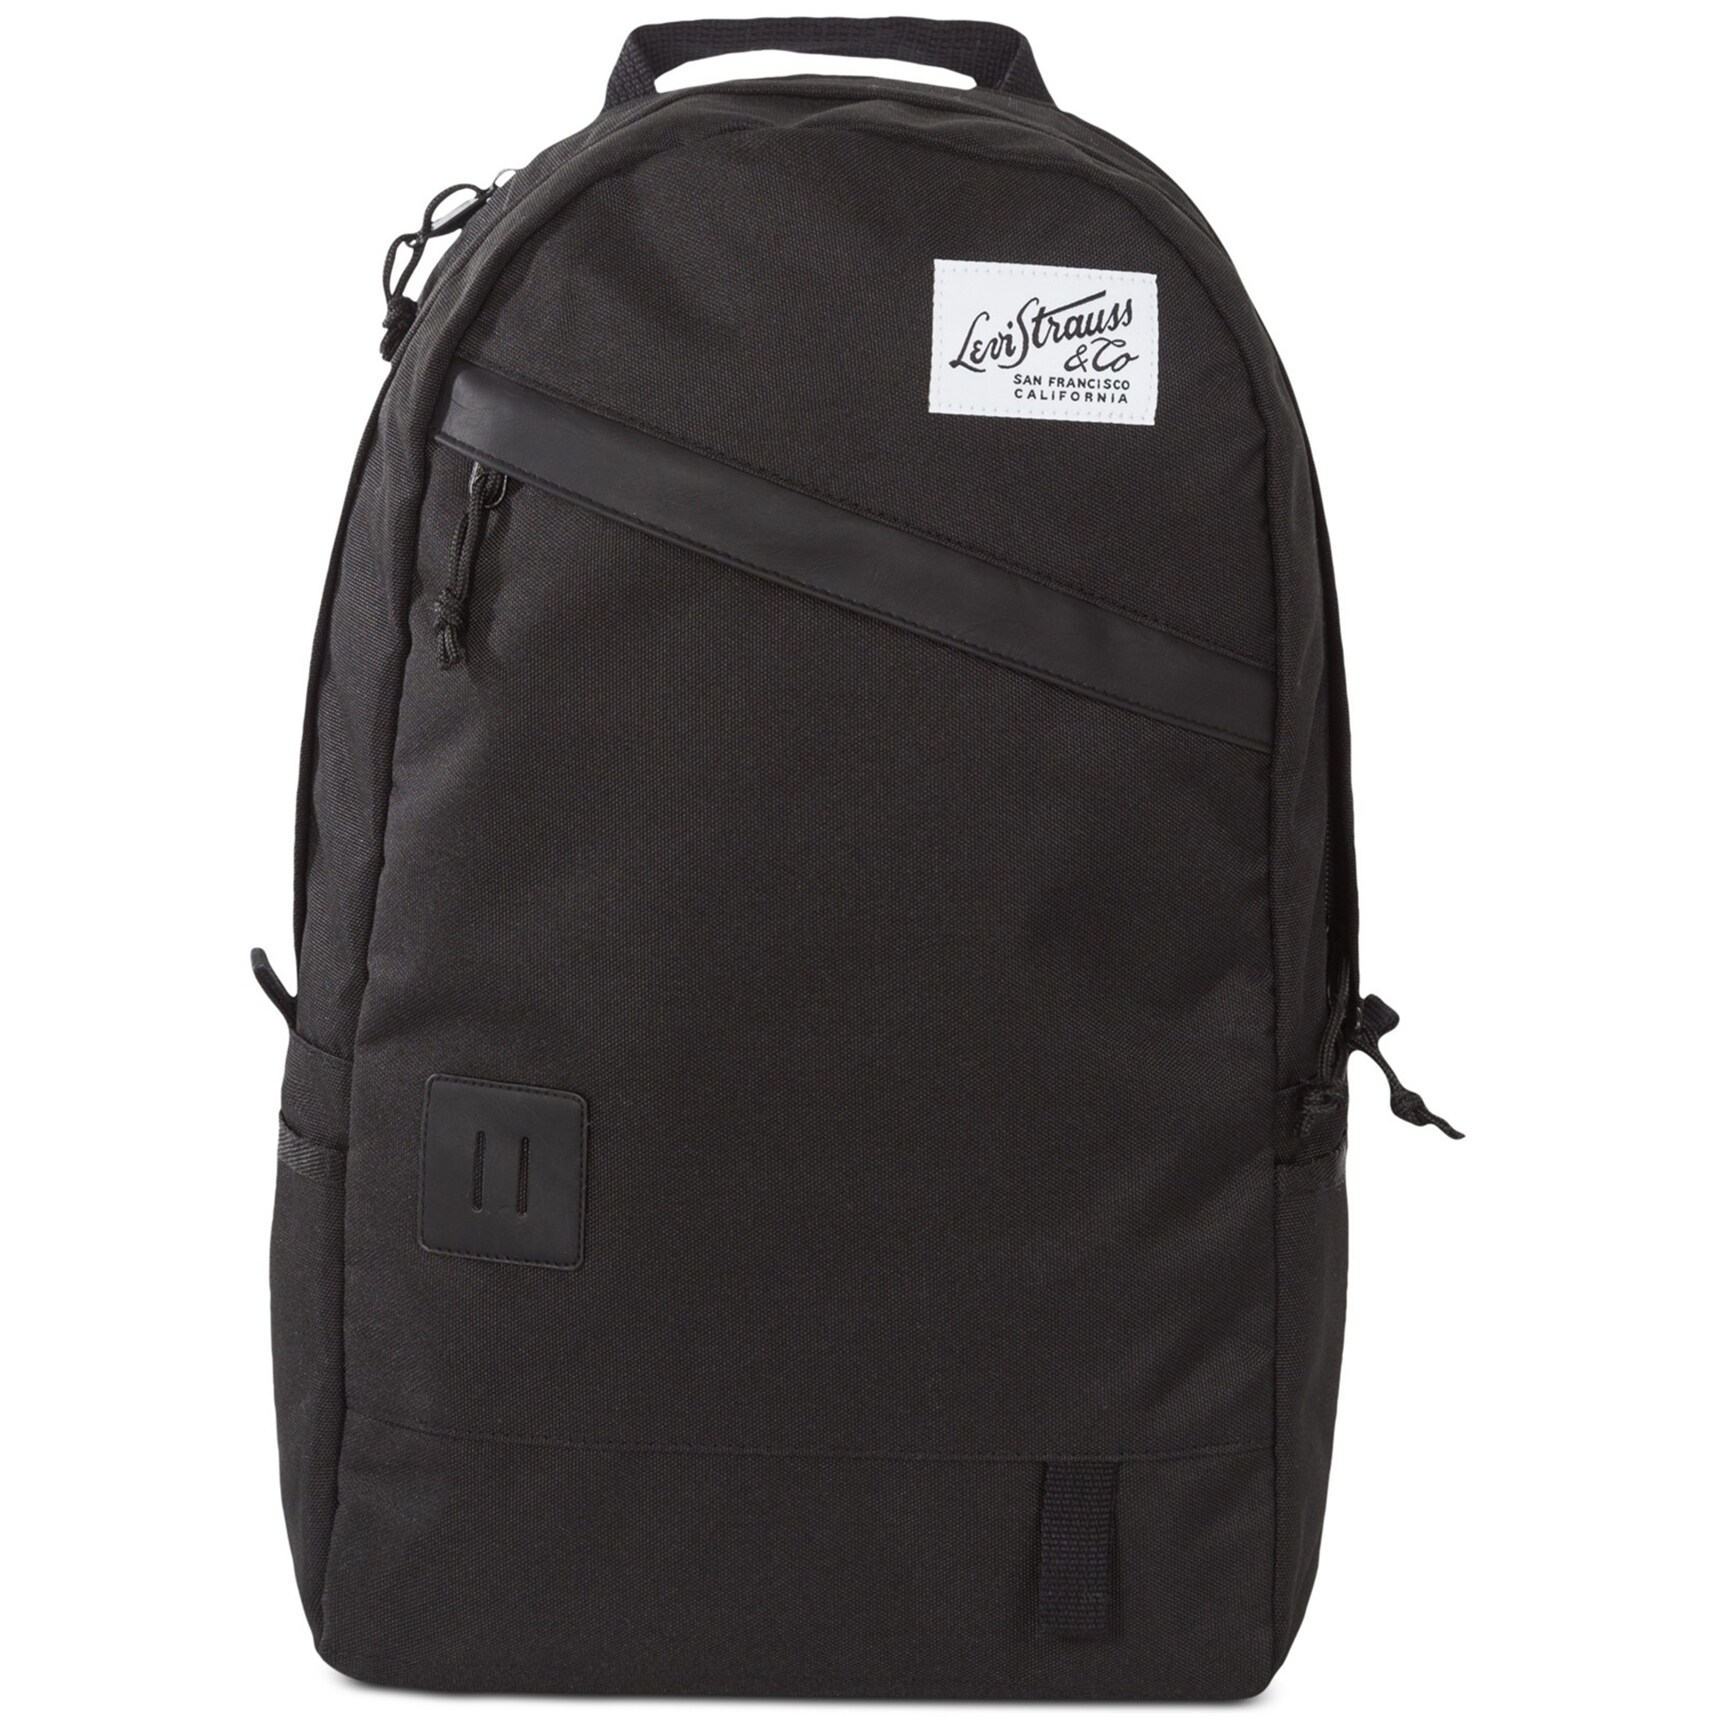 levi's backpack black